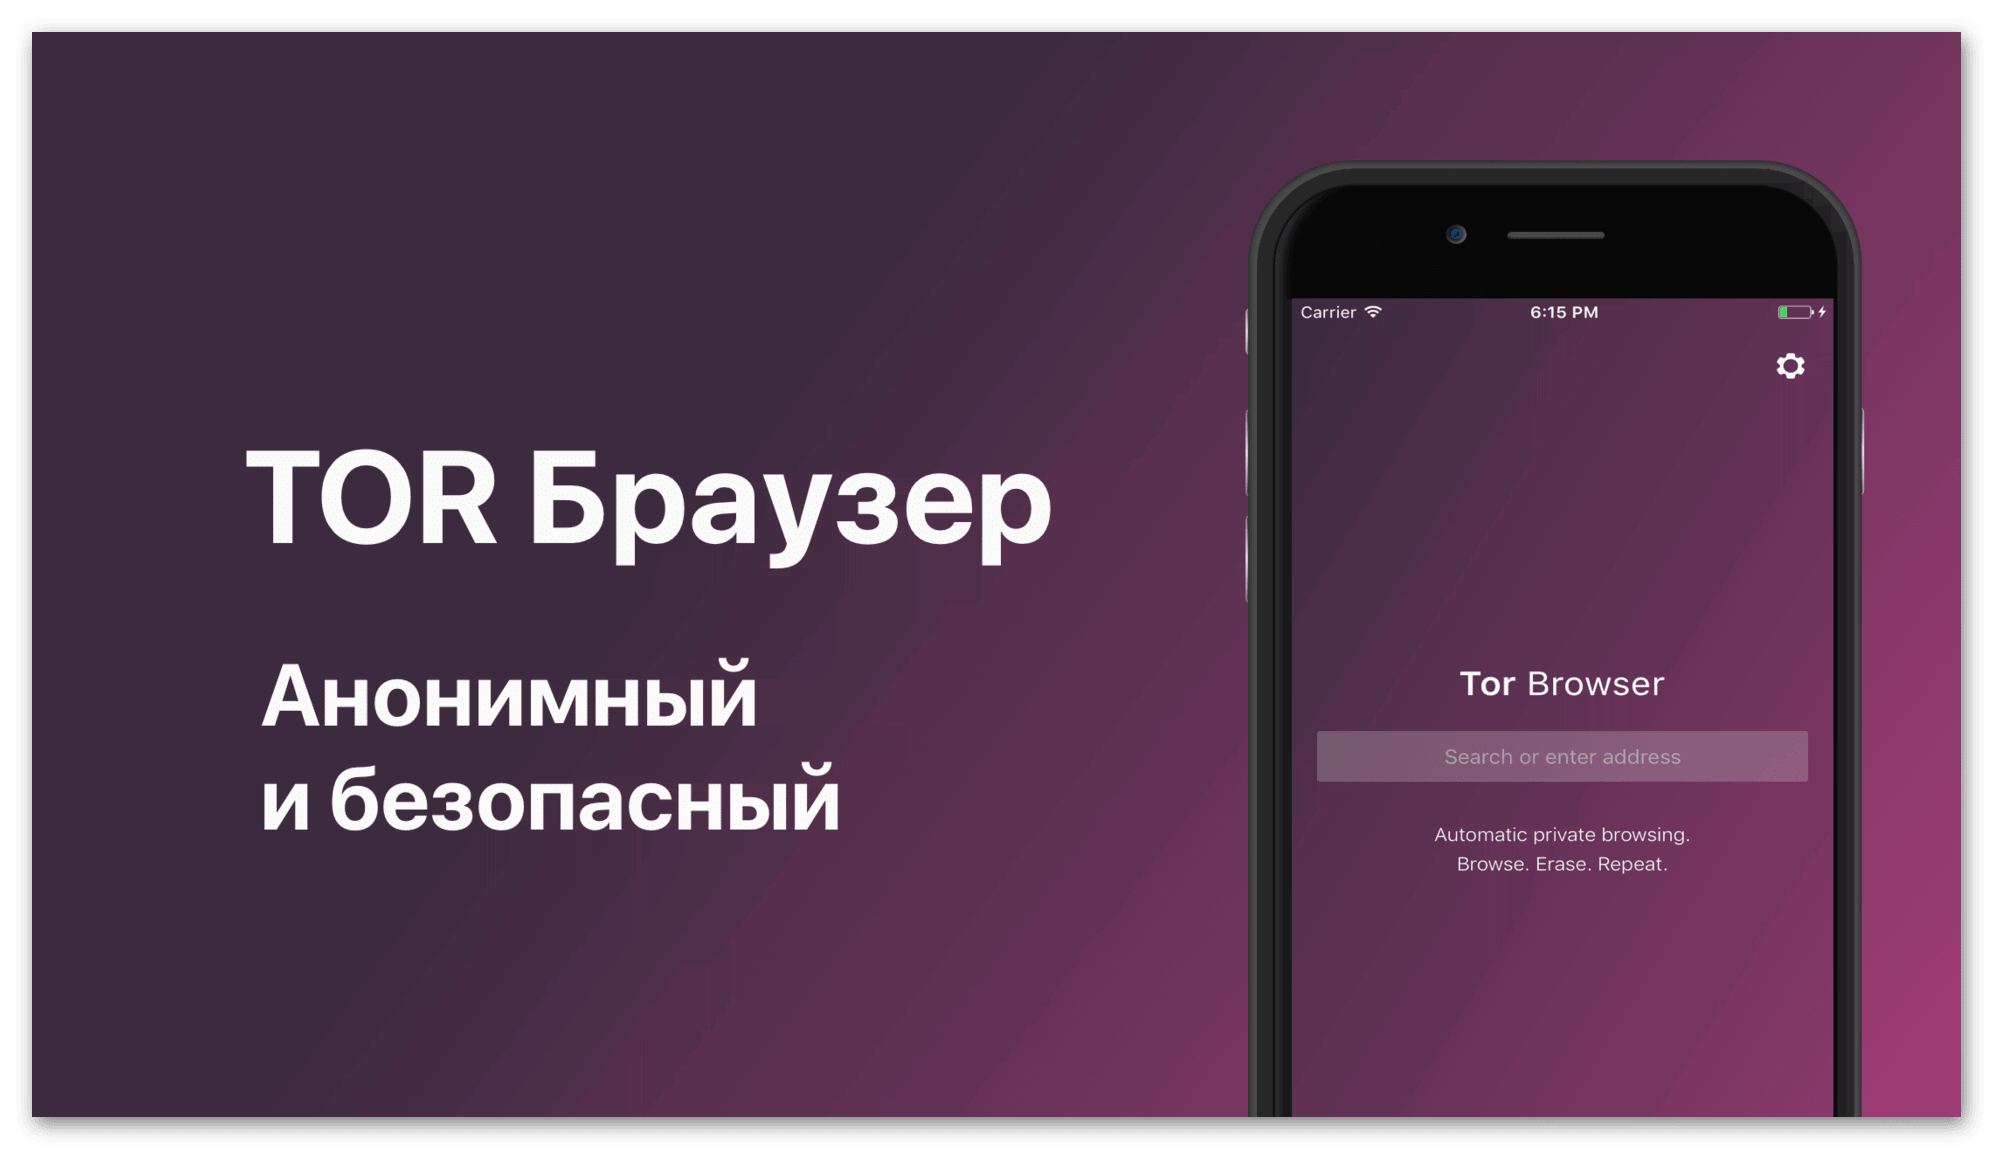 Скачать тор браузер бесплатно на айфон mega скачать браузер тор для iphone на русском языке mega